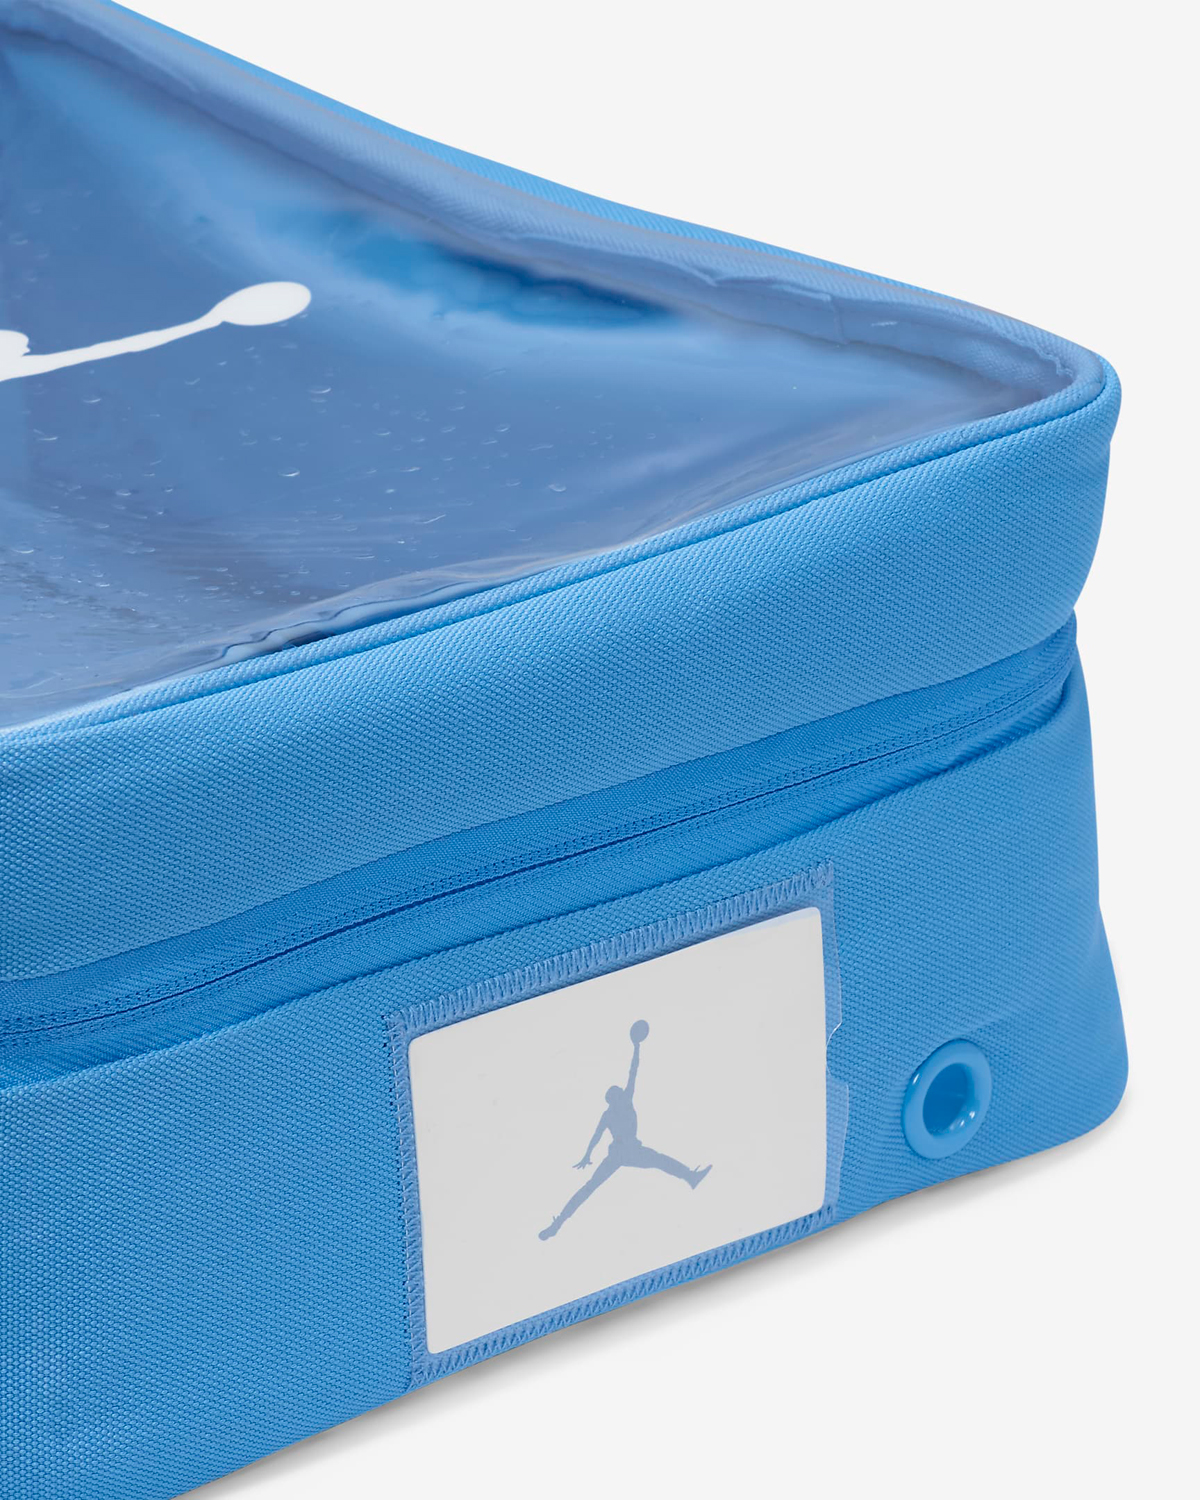 Jordan-Shoe-Box-Bag-University-Blue-3